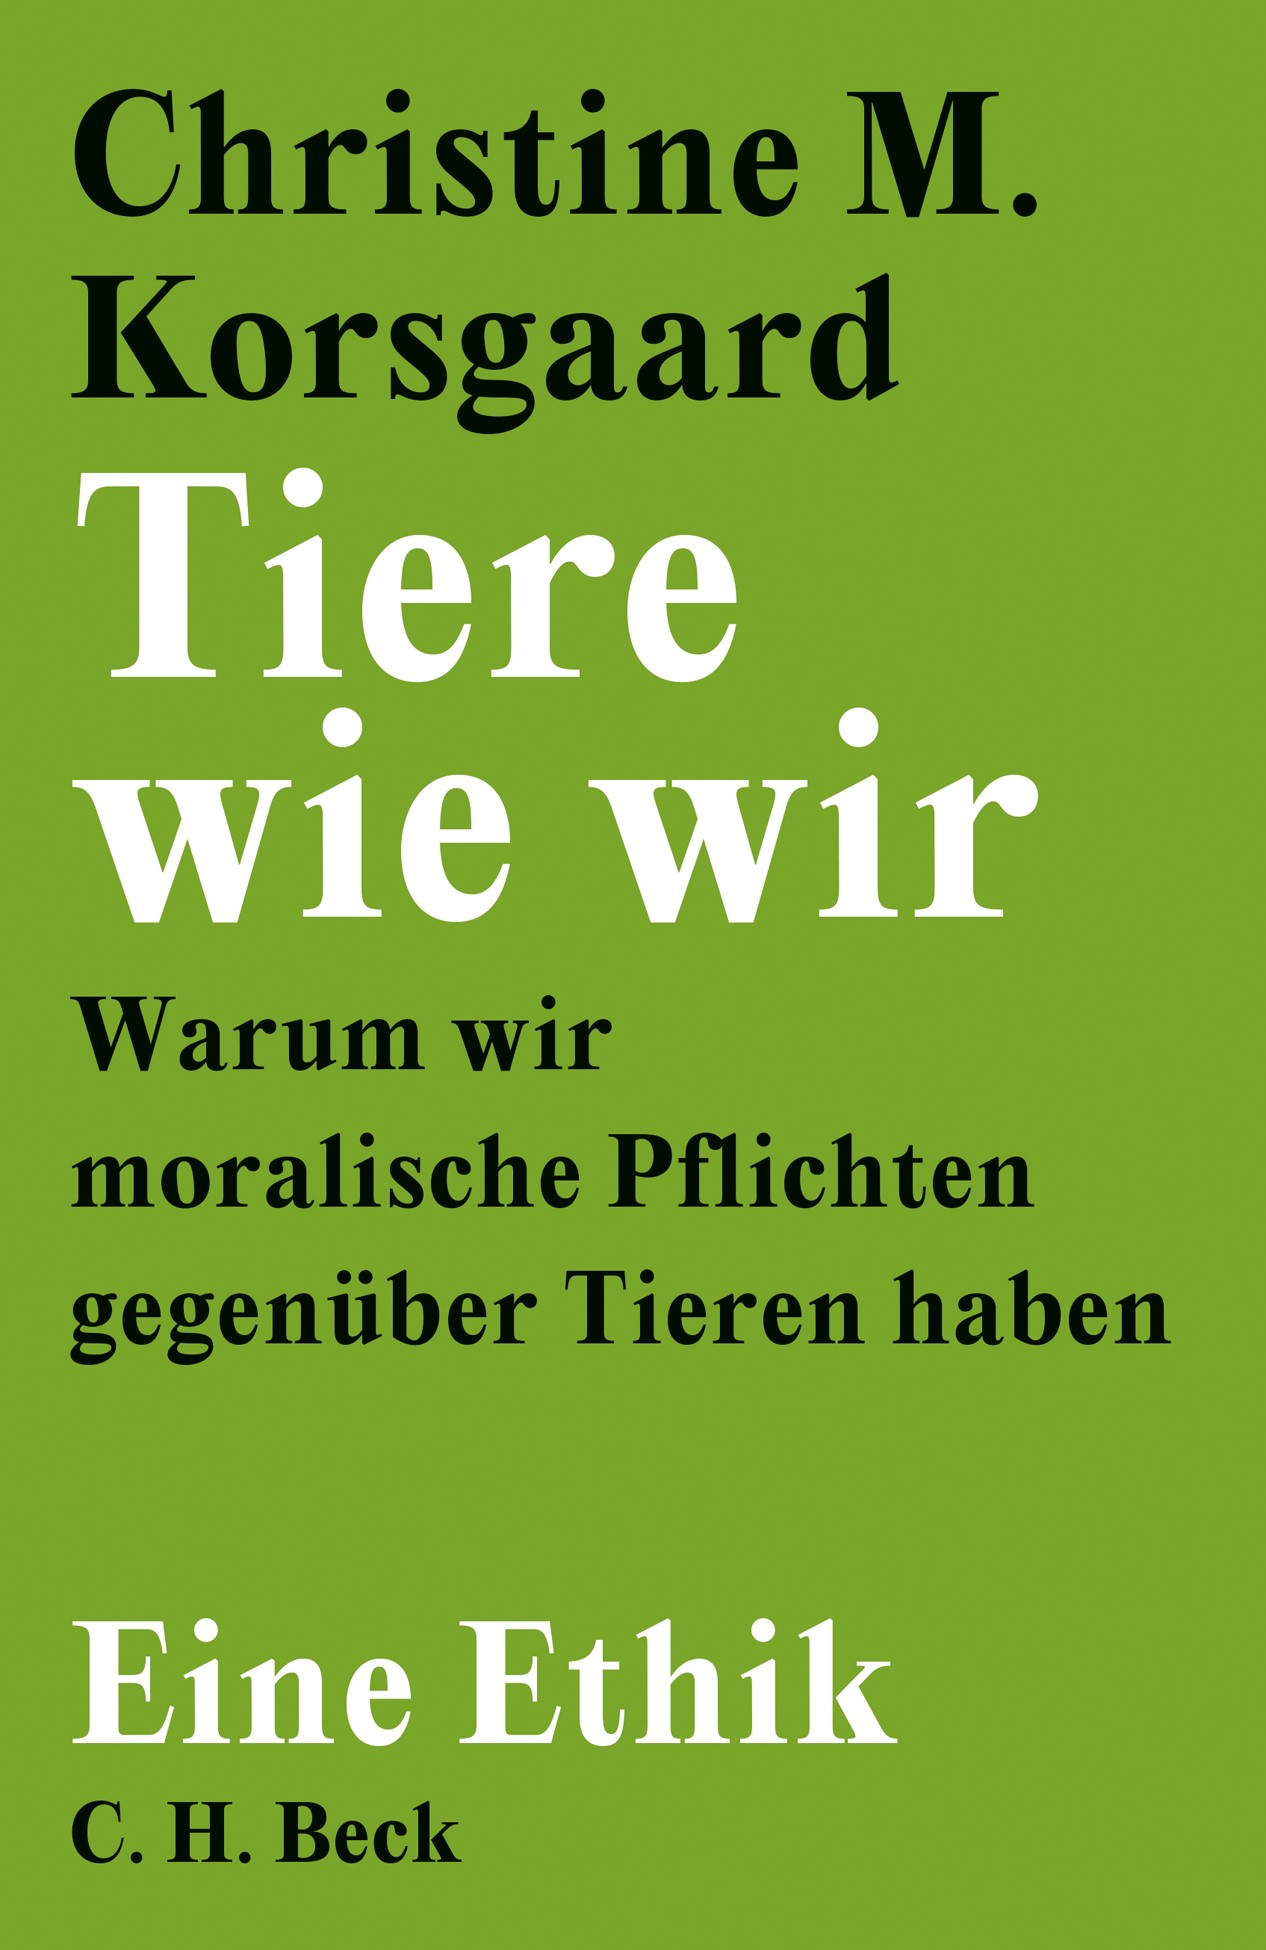 Cover: Korsgaard, Christine M., Tiere wie wir